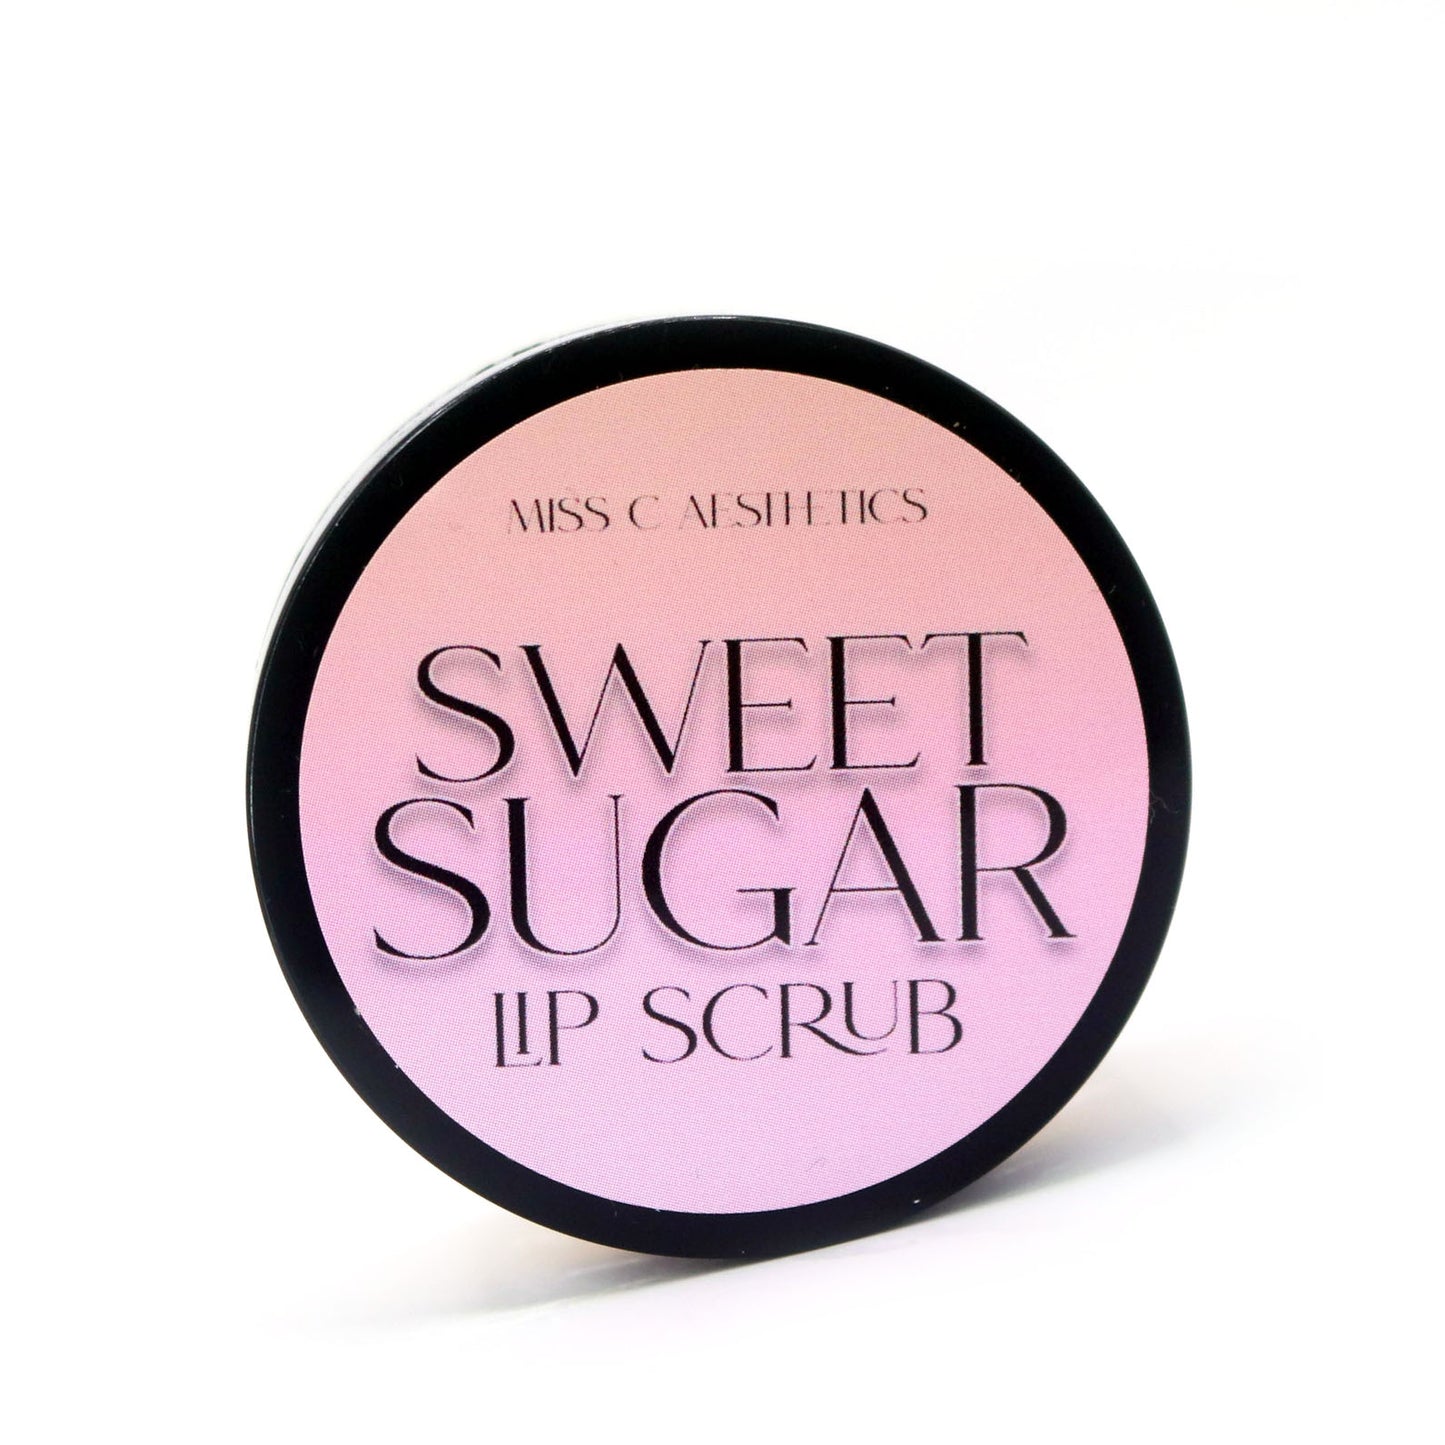 "Sweet Sugar" Lip Scrub